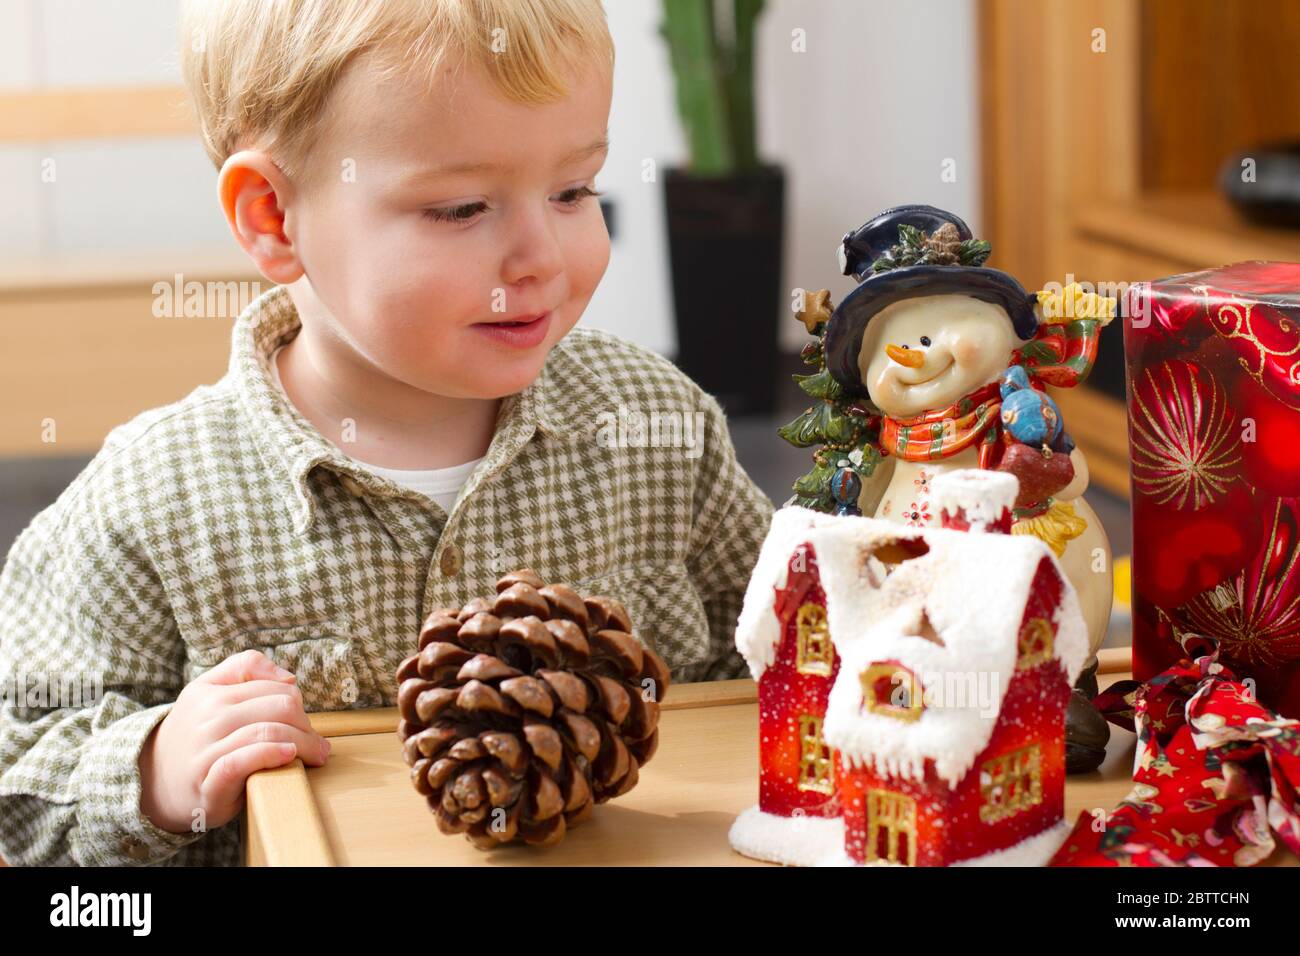 Zweijaehriger Junge mit Weihnachtsdekoration, Lebkuchenhaus, MR: Sí Foto de stock